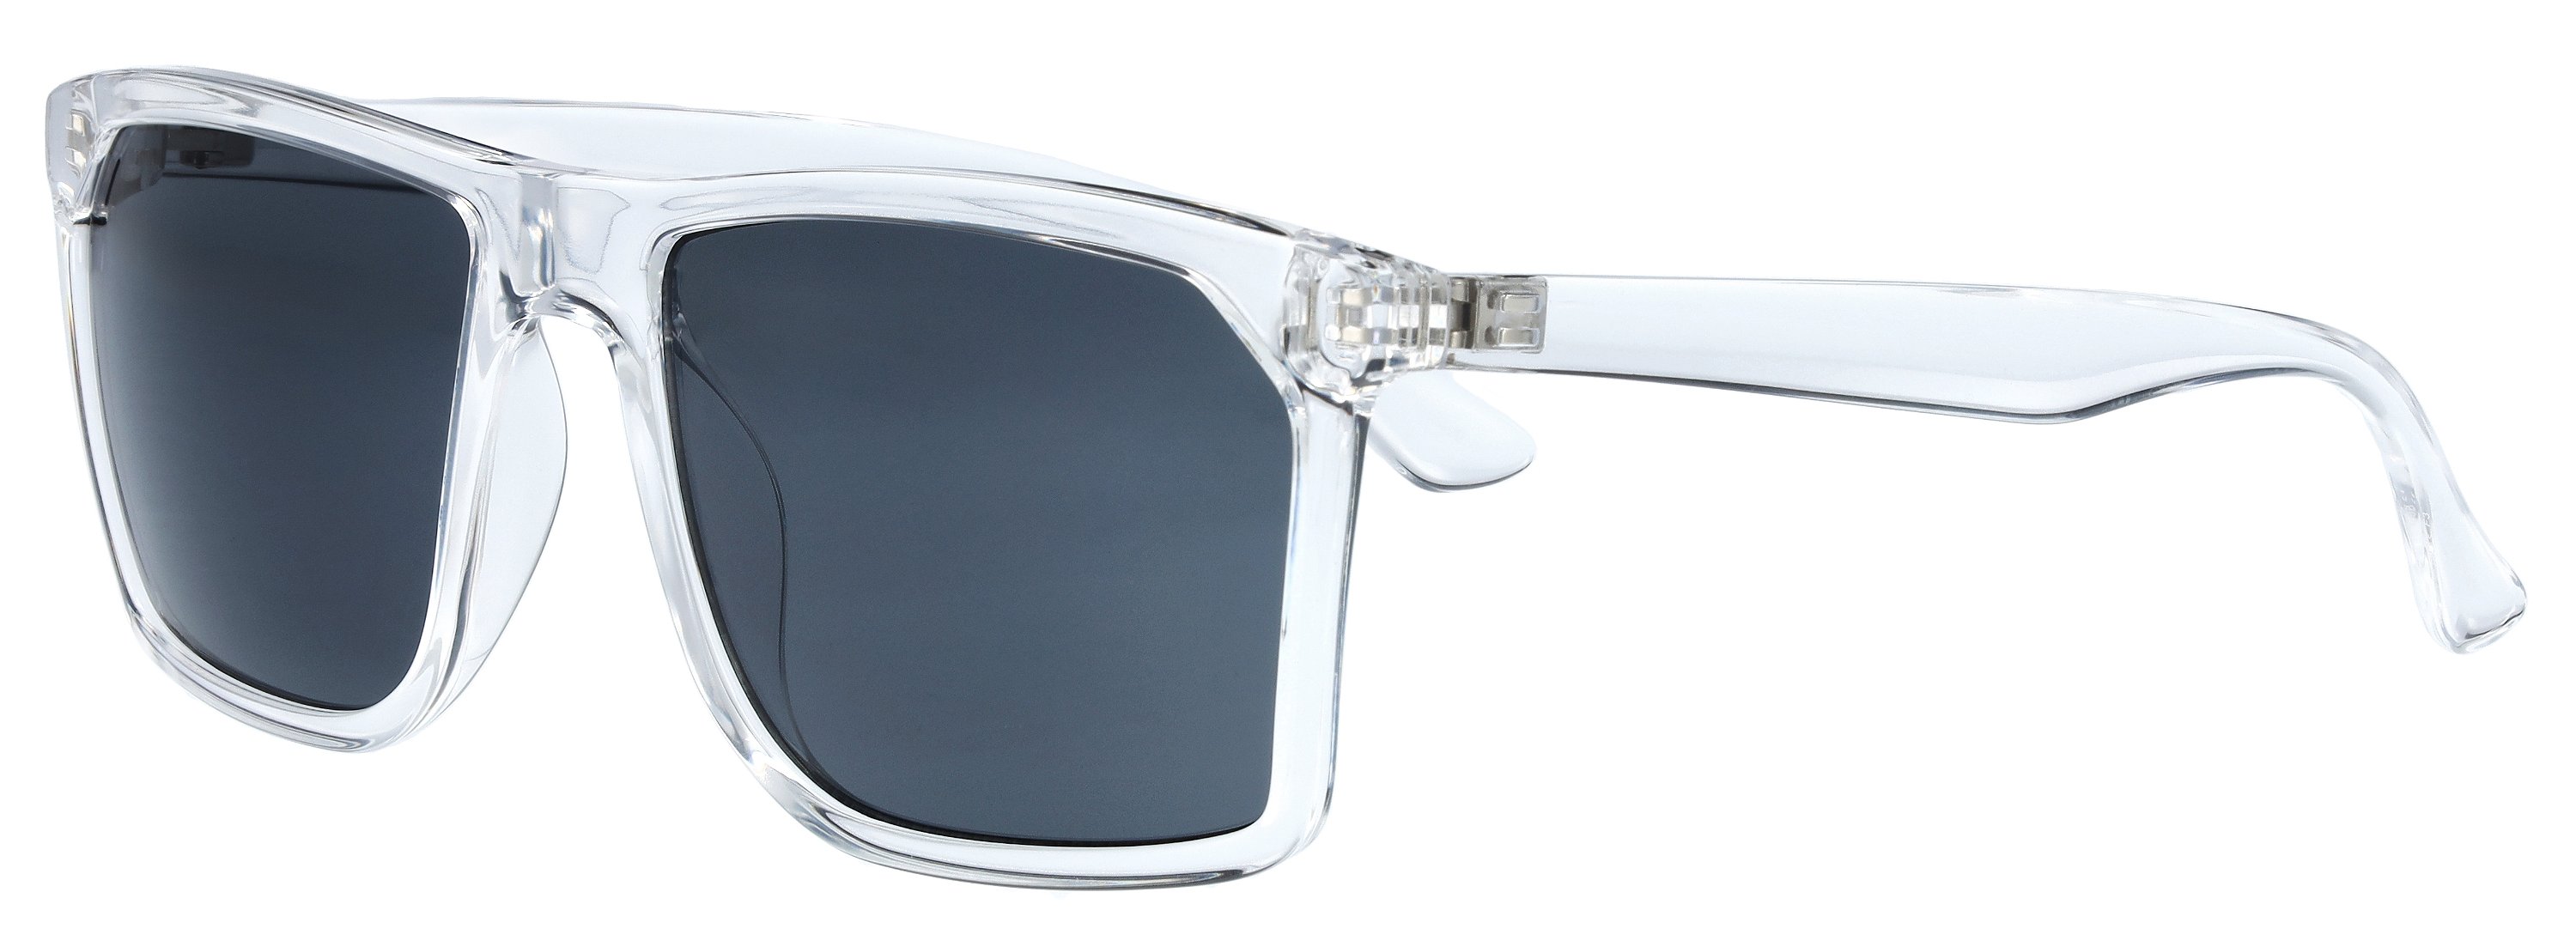 Das Bild zeigt die Sonnenbrille 721251 von der Marke Abele Optik in transparent.